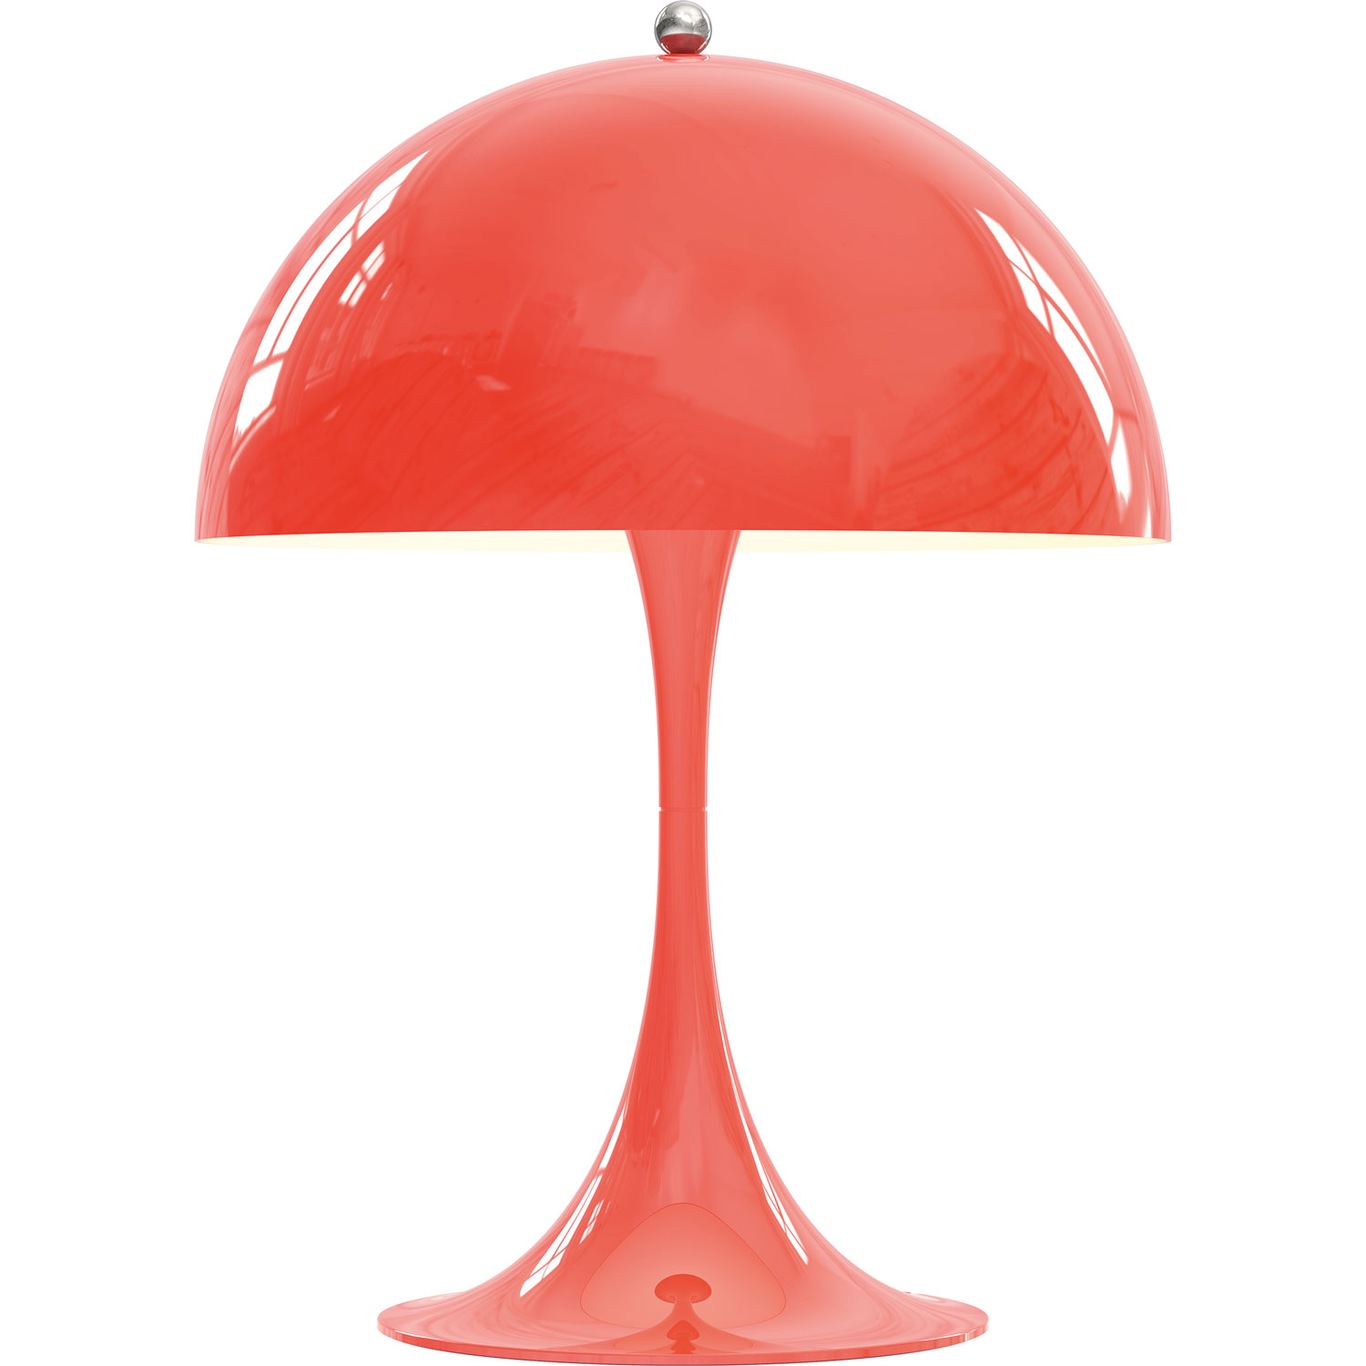 Panthella 250 Table Lamp, Coral